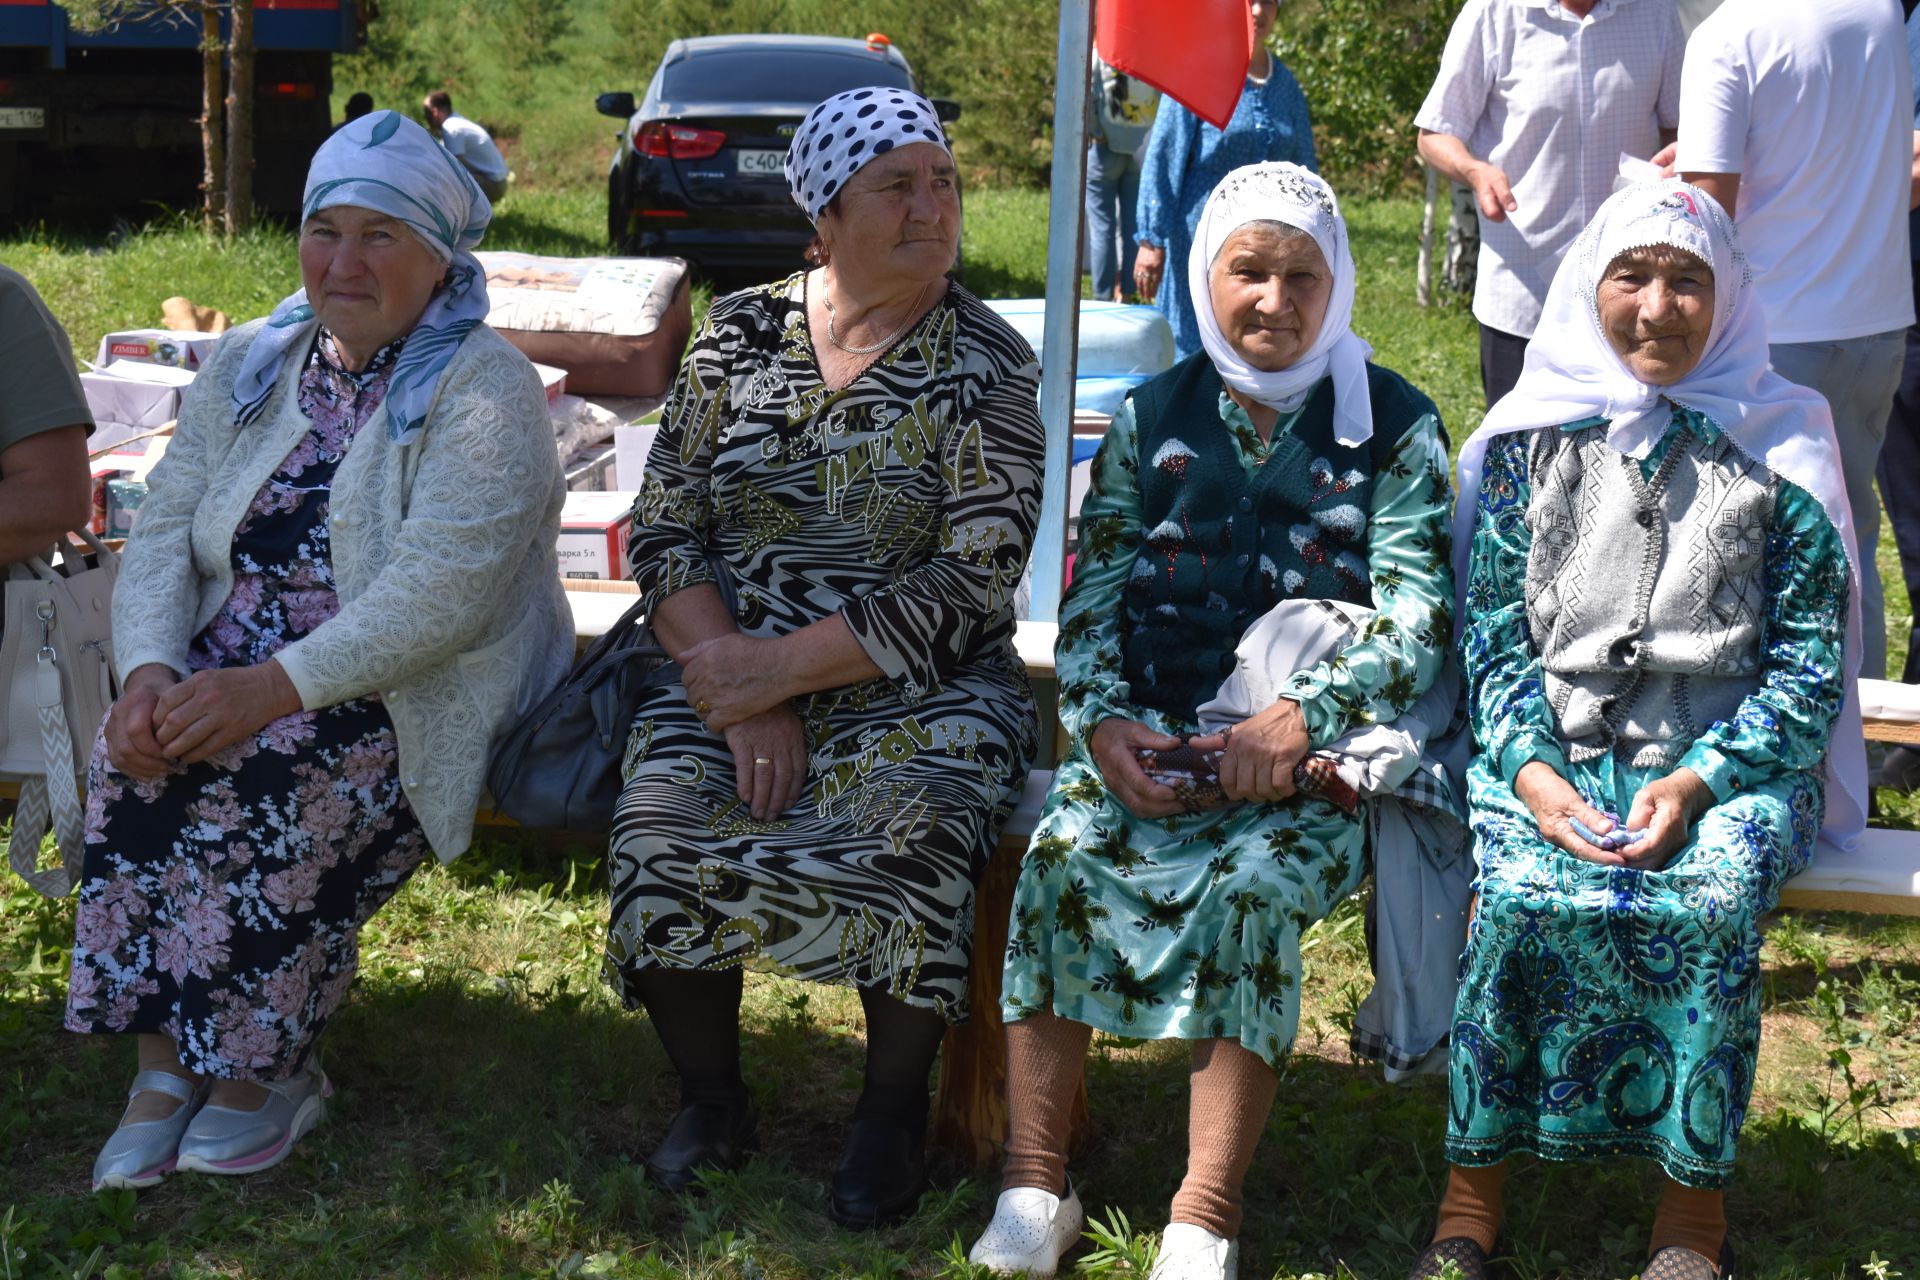 Борьба корэш, угощения и лотерея: в Среднетиганском сельском поселении прошел Сабантуй